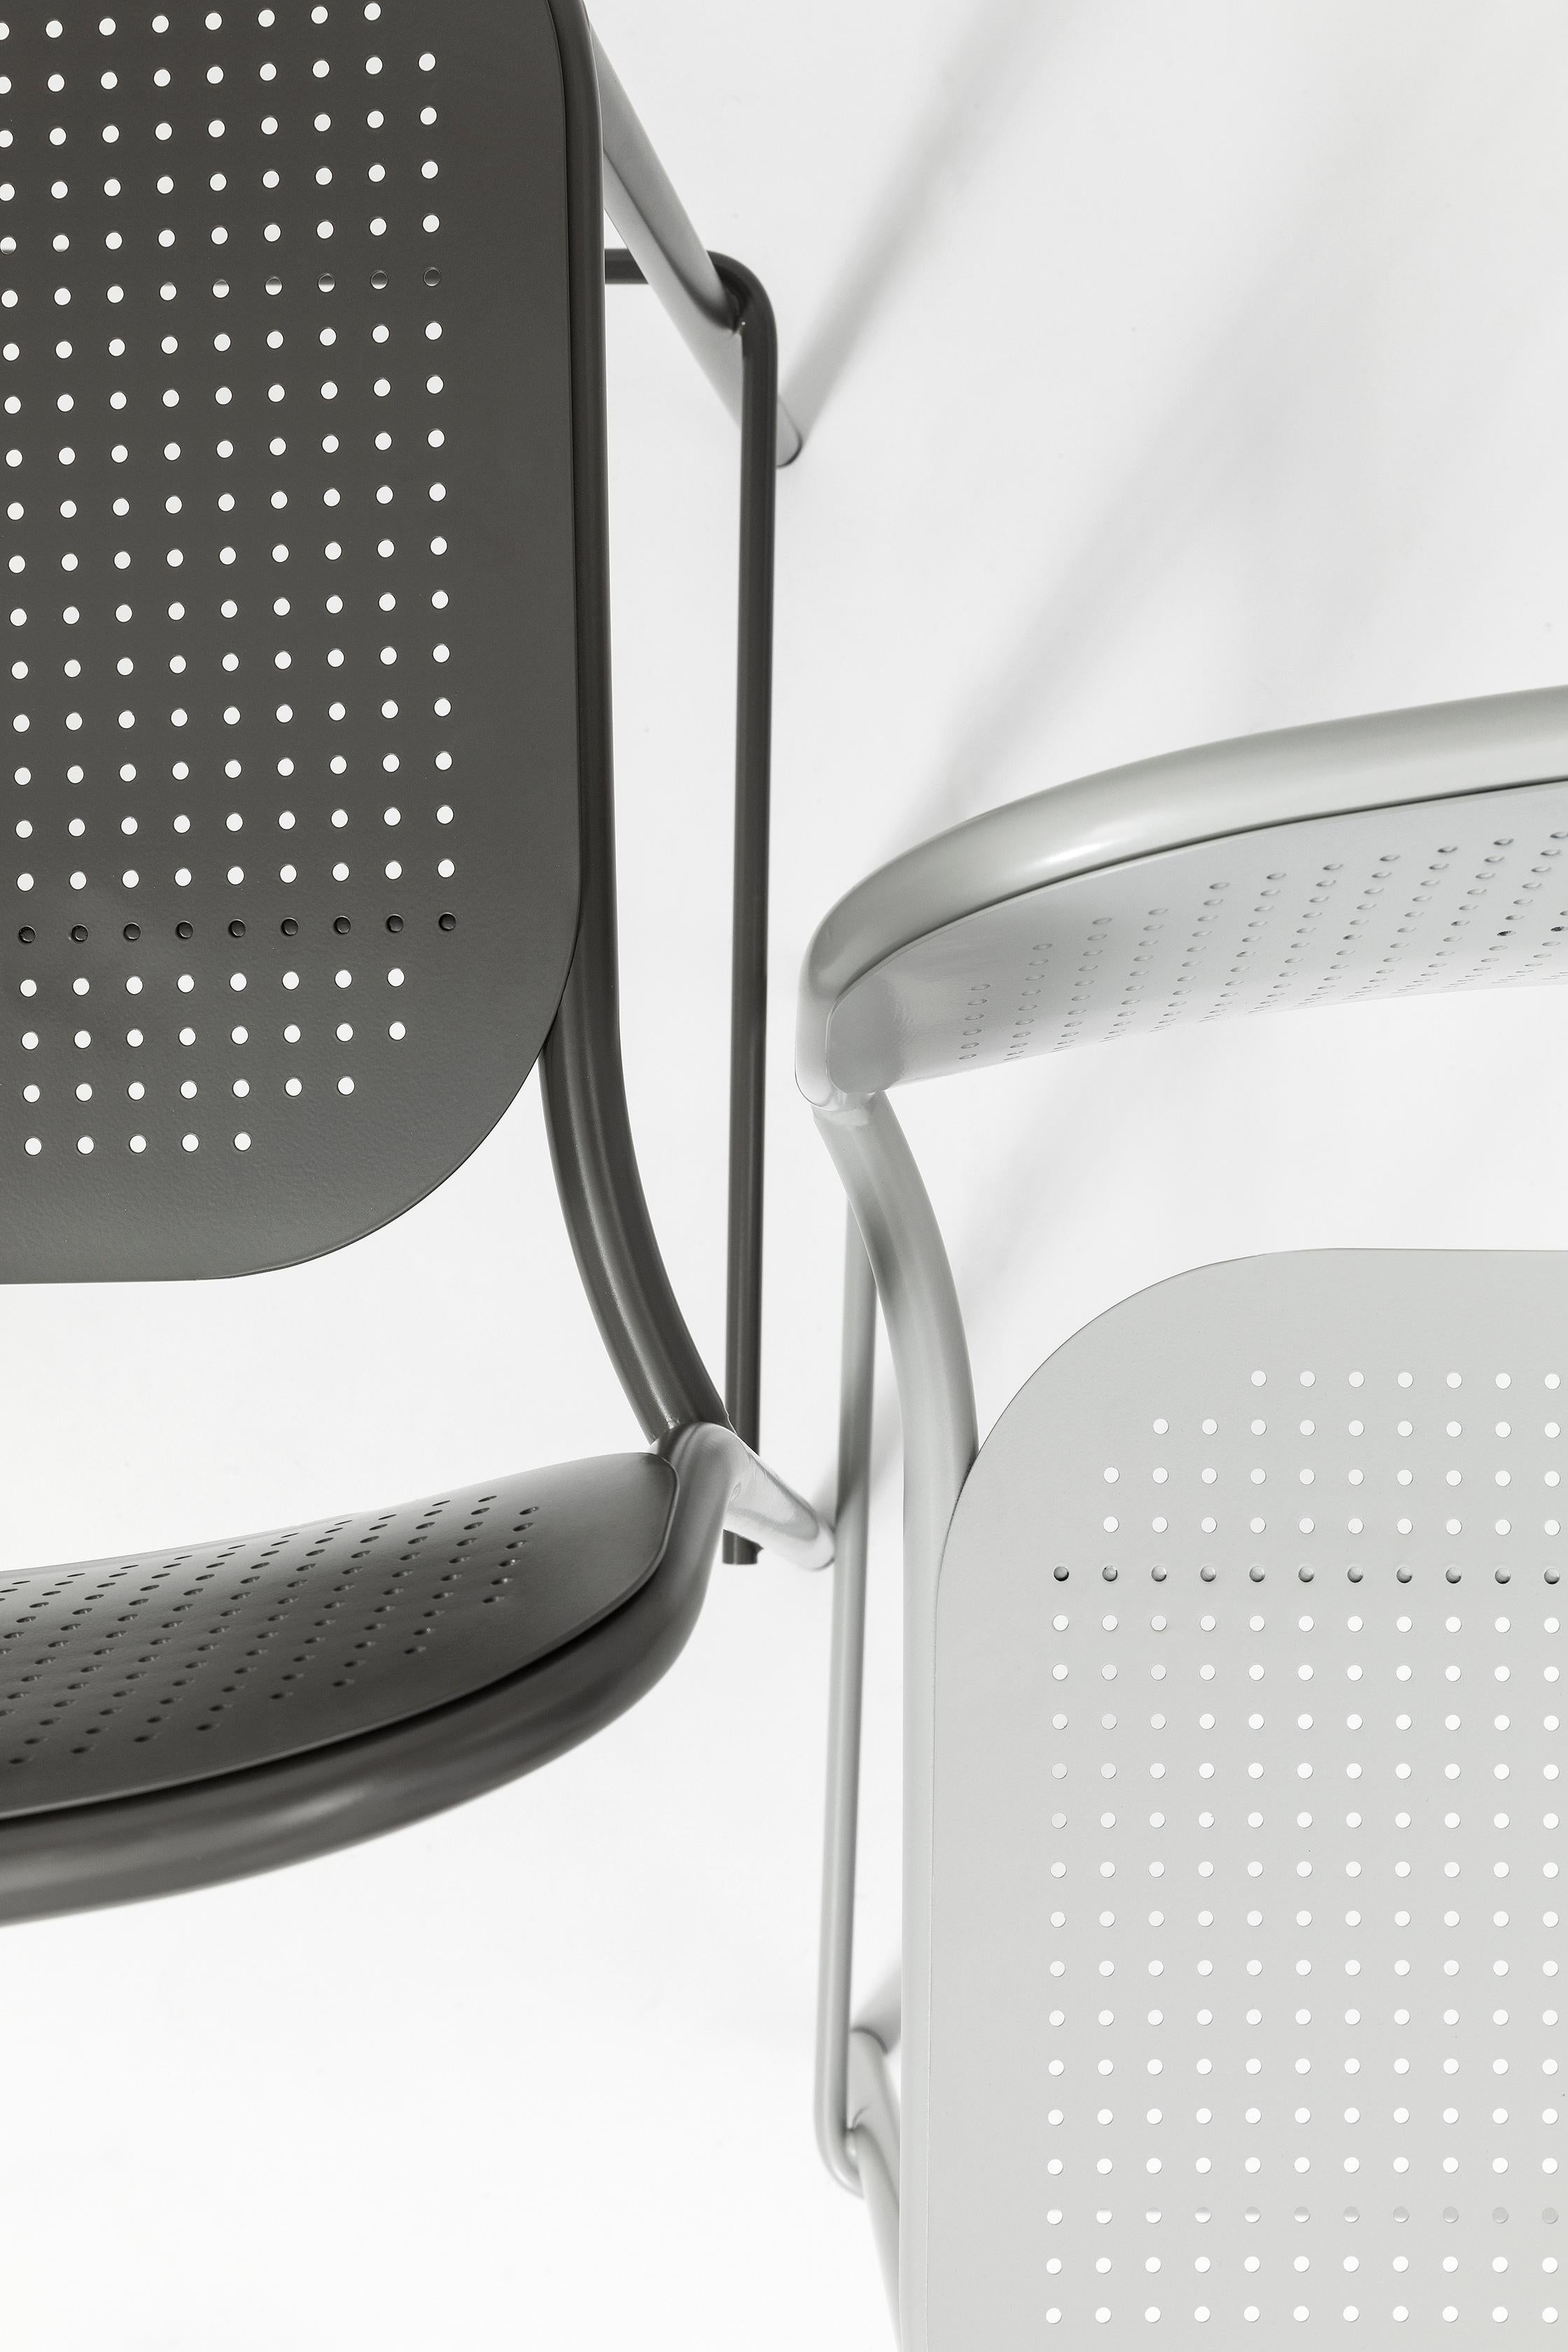 La collection Metis Dot comprend la chaise avec ou sans accoudoir, la version lounge avec ou sans accoudoir et le tabouret en deux hauteurs. Dans toutes ses variantes, la structure métallique tubulaire est complétée par l'assise et le dossier en